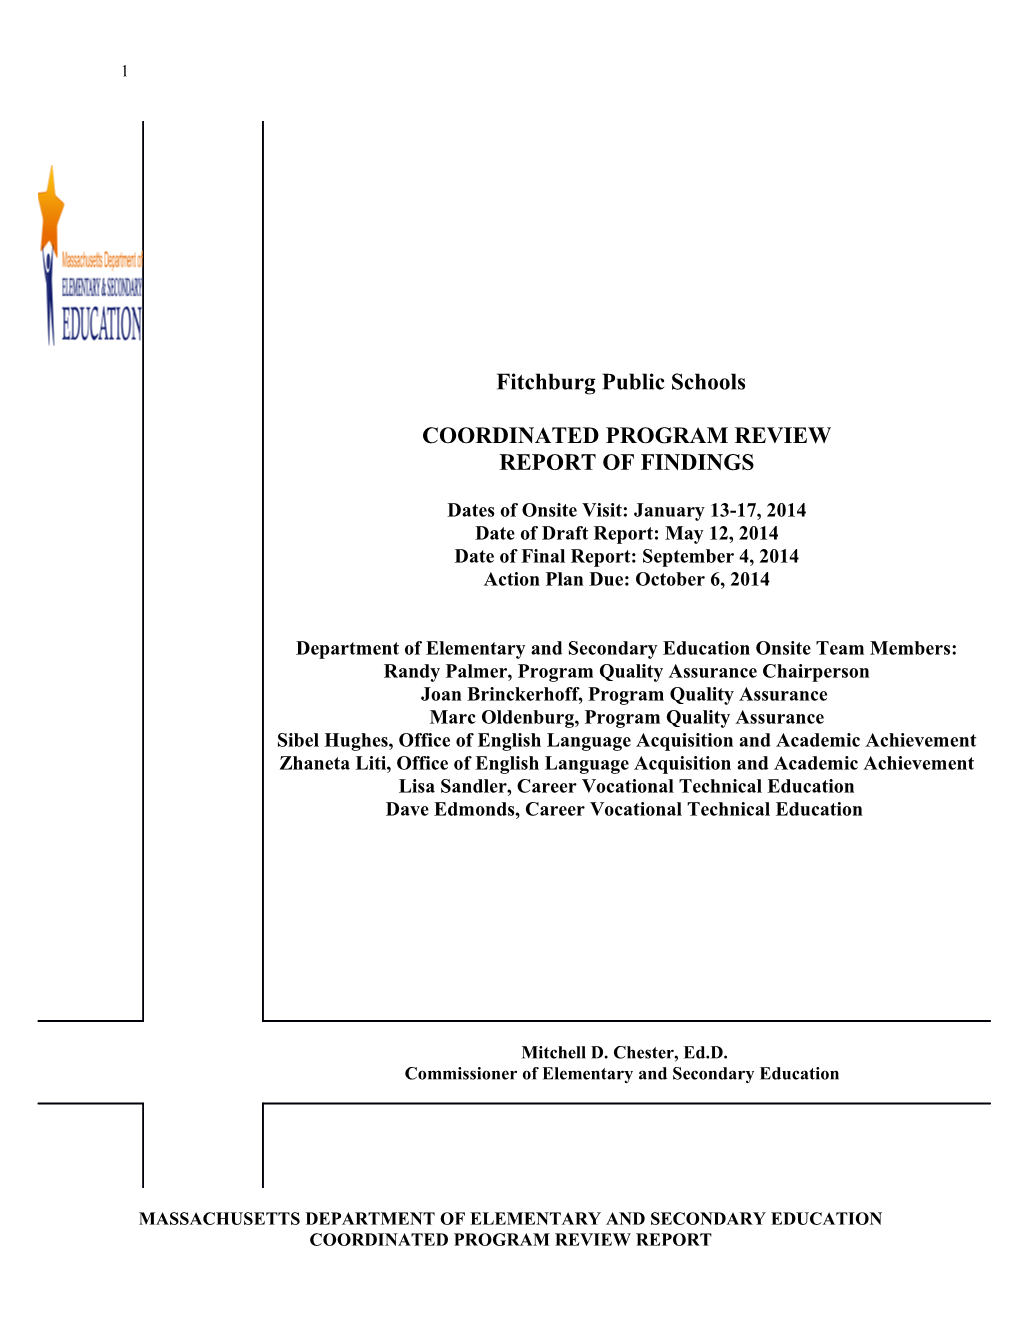 Fitchburg Public Schools CPR Final Report 2014